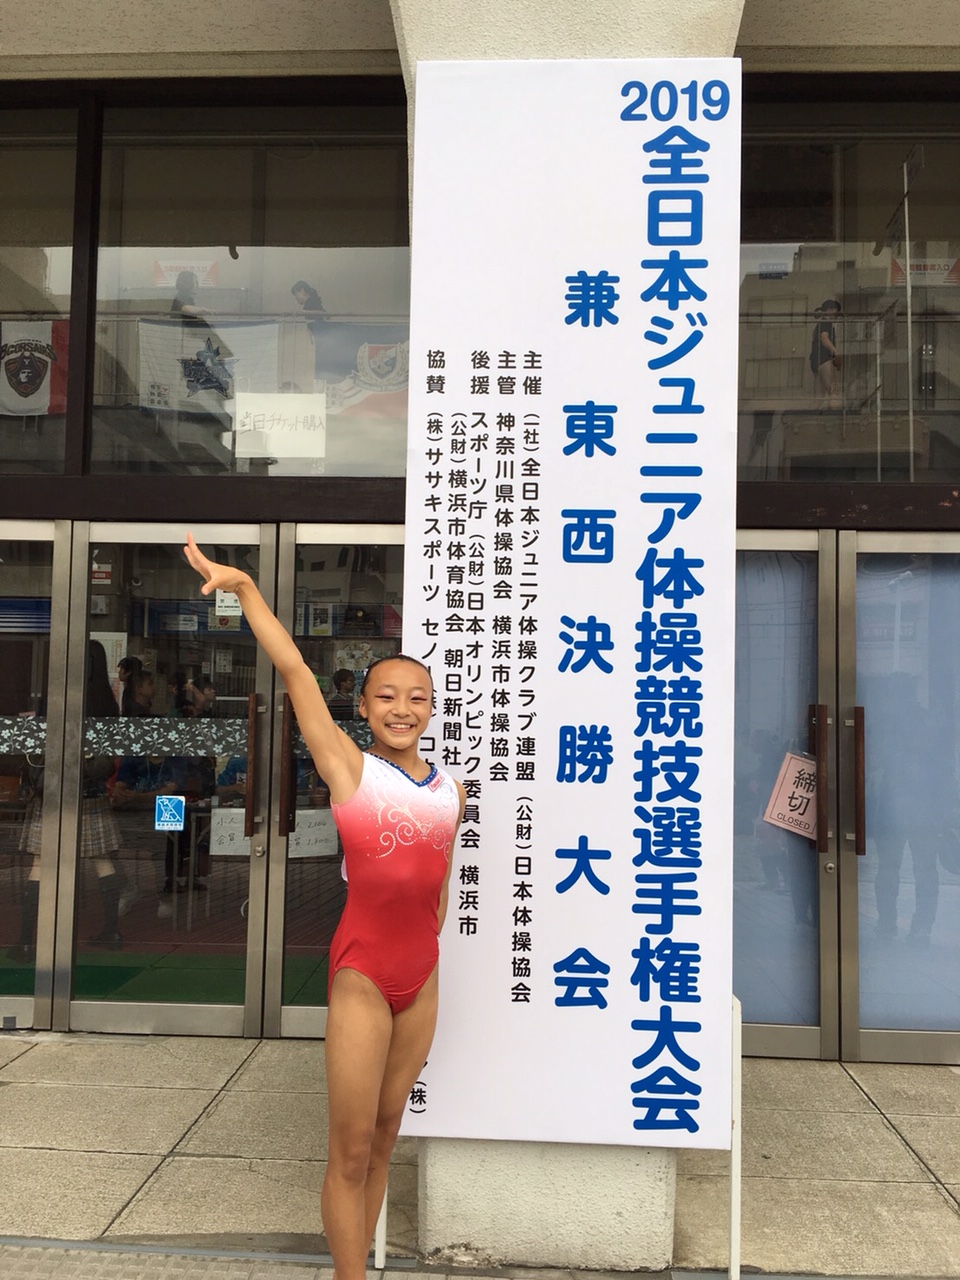 ジュニア 体操 2019 全日本 2019全日本ジュニア体操競技選手権大会